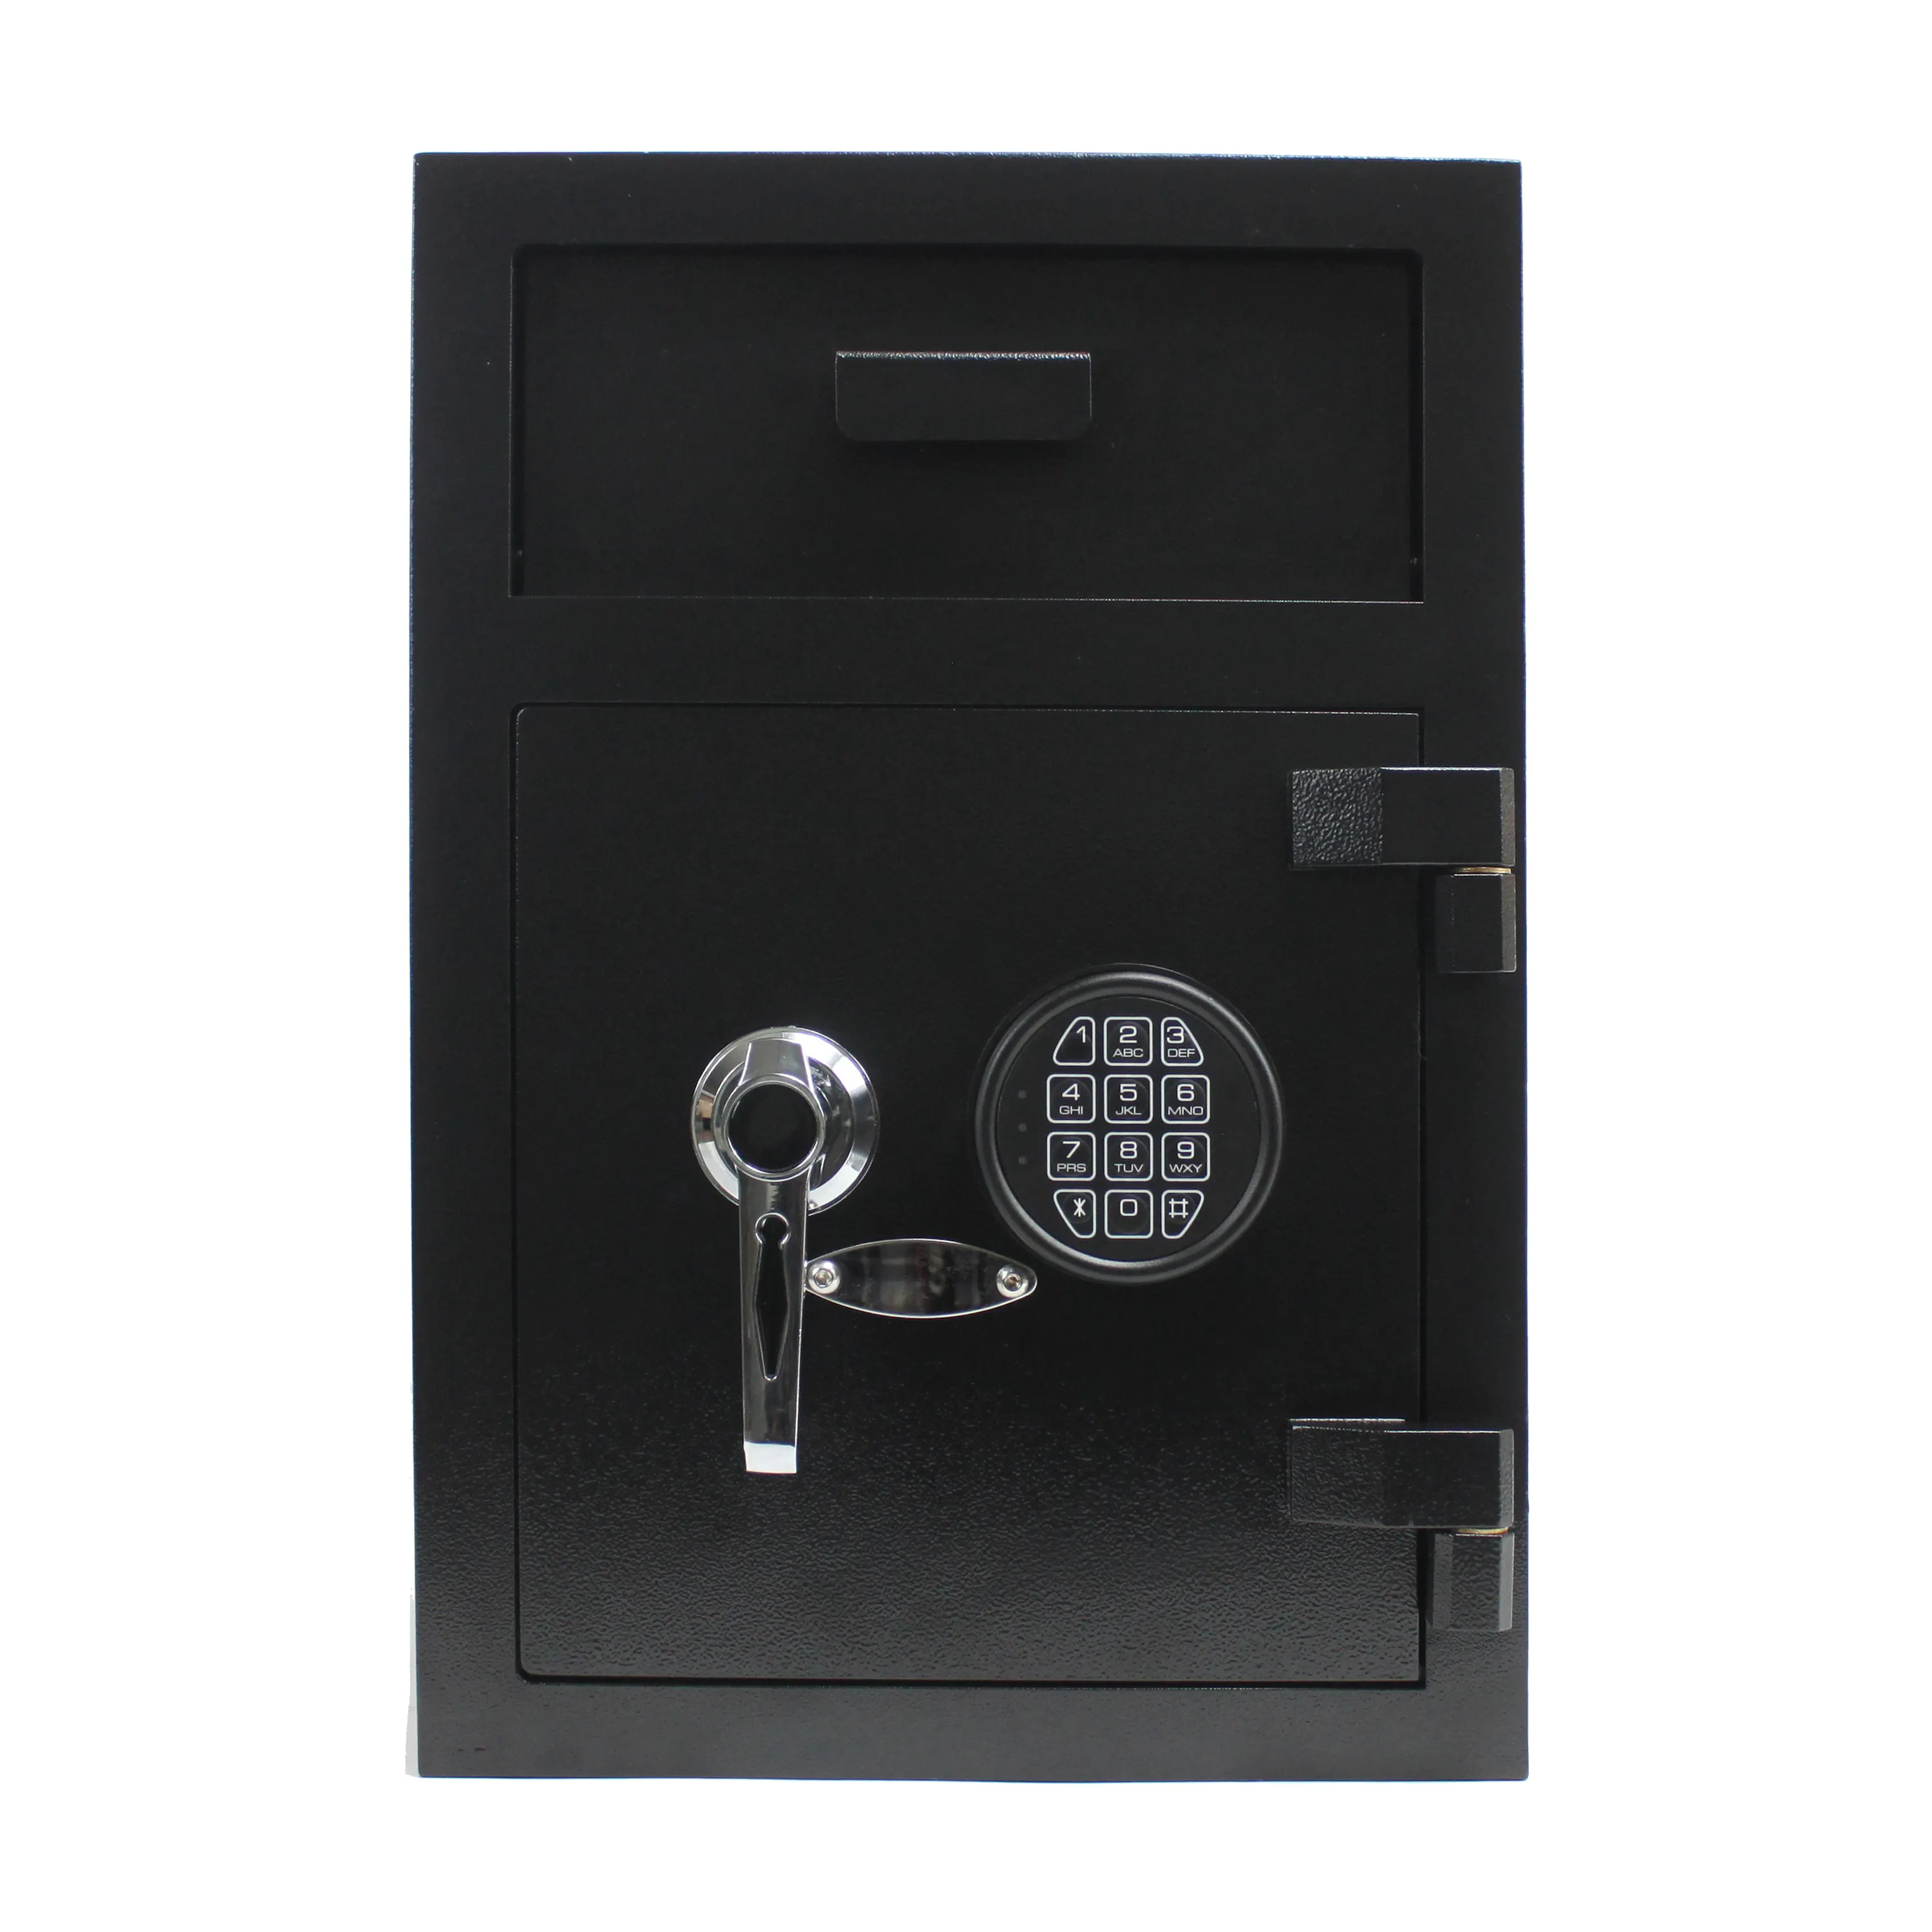 UNI-SEC kotak Deposit aman atau aman ukuran berbeda untuk uang tunai Digital keamanan kotak aman fungsi Alarm (USE-5135EM)